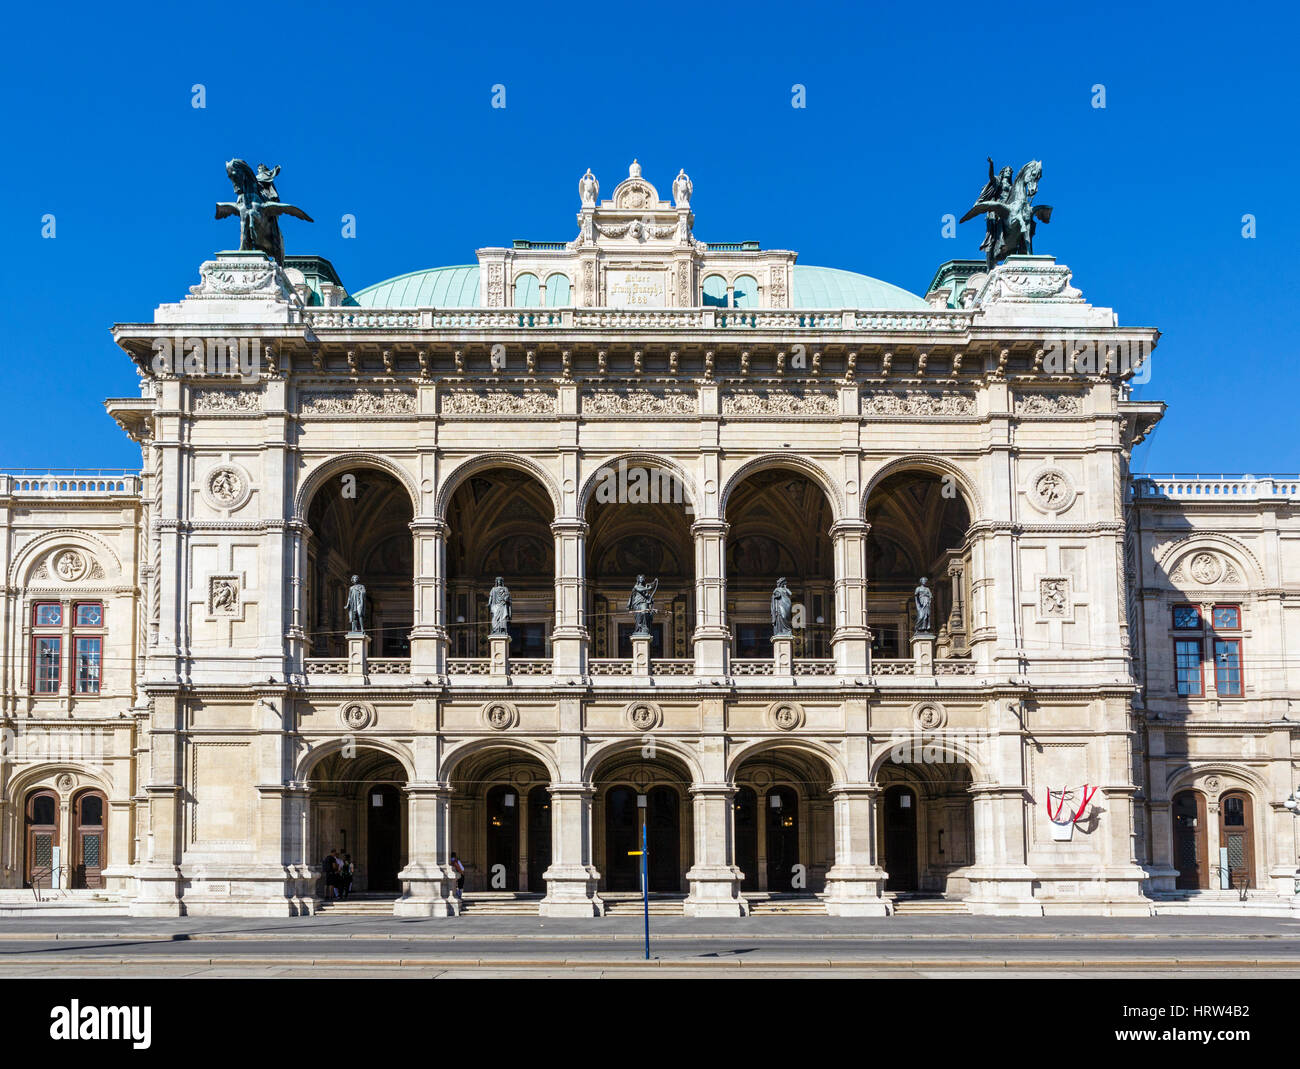 L'Opéra de Vienne, Vienne, Autriche Banque D'Images